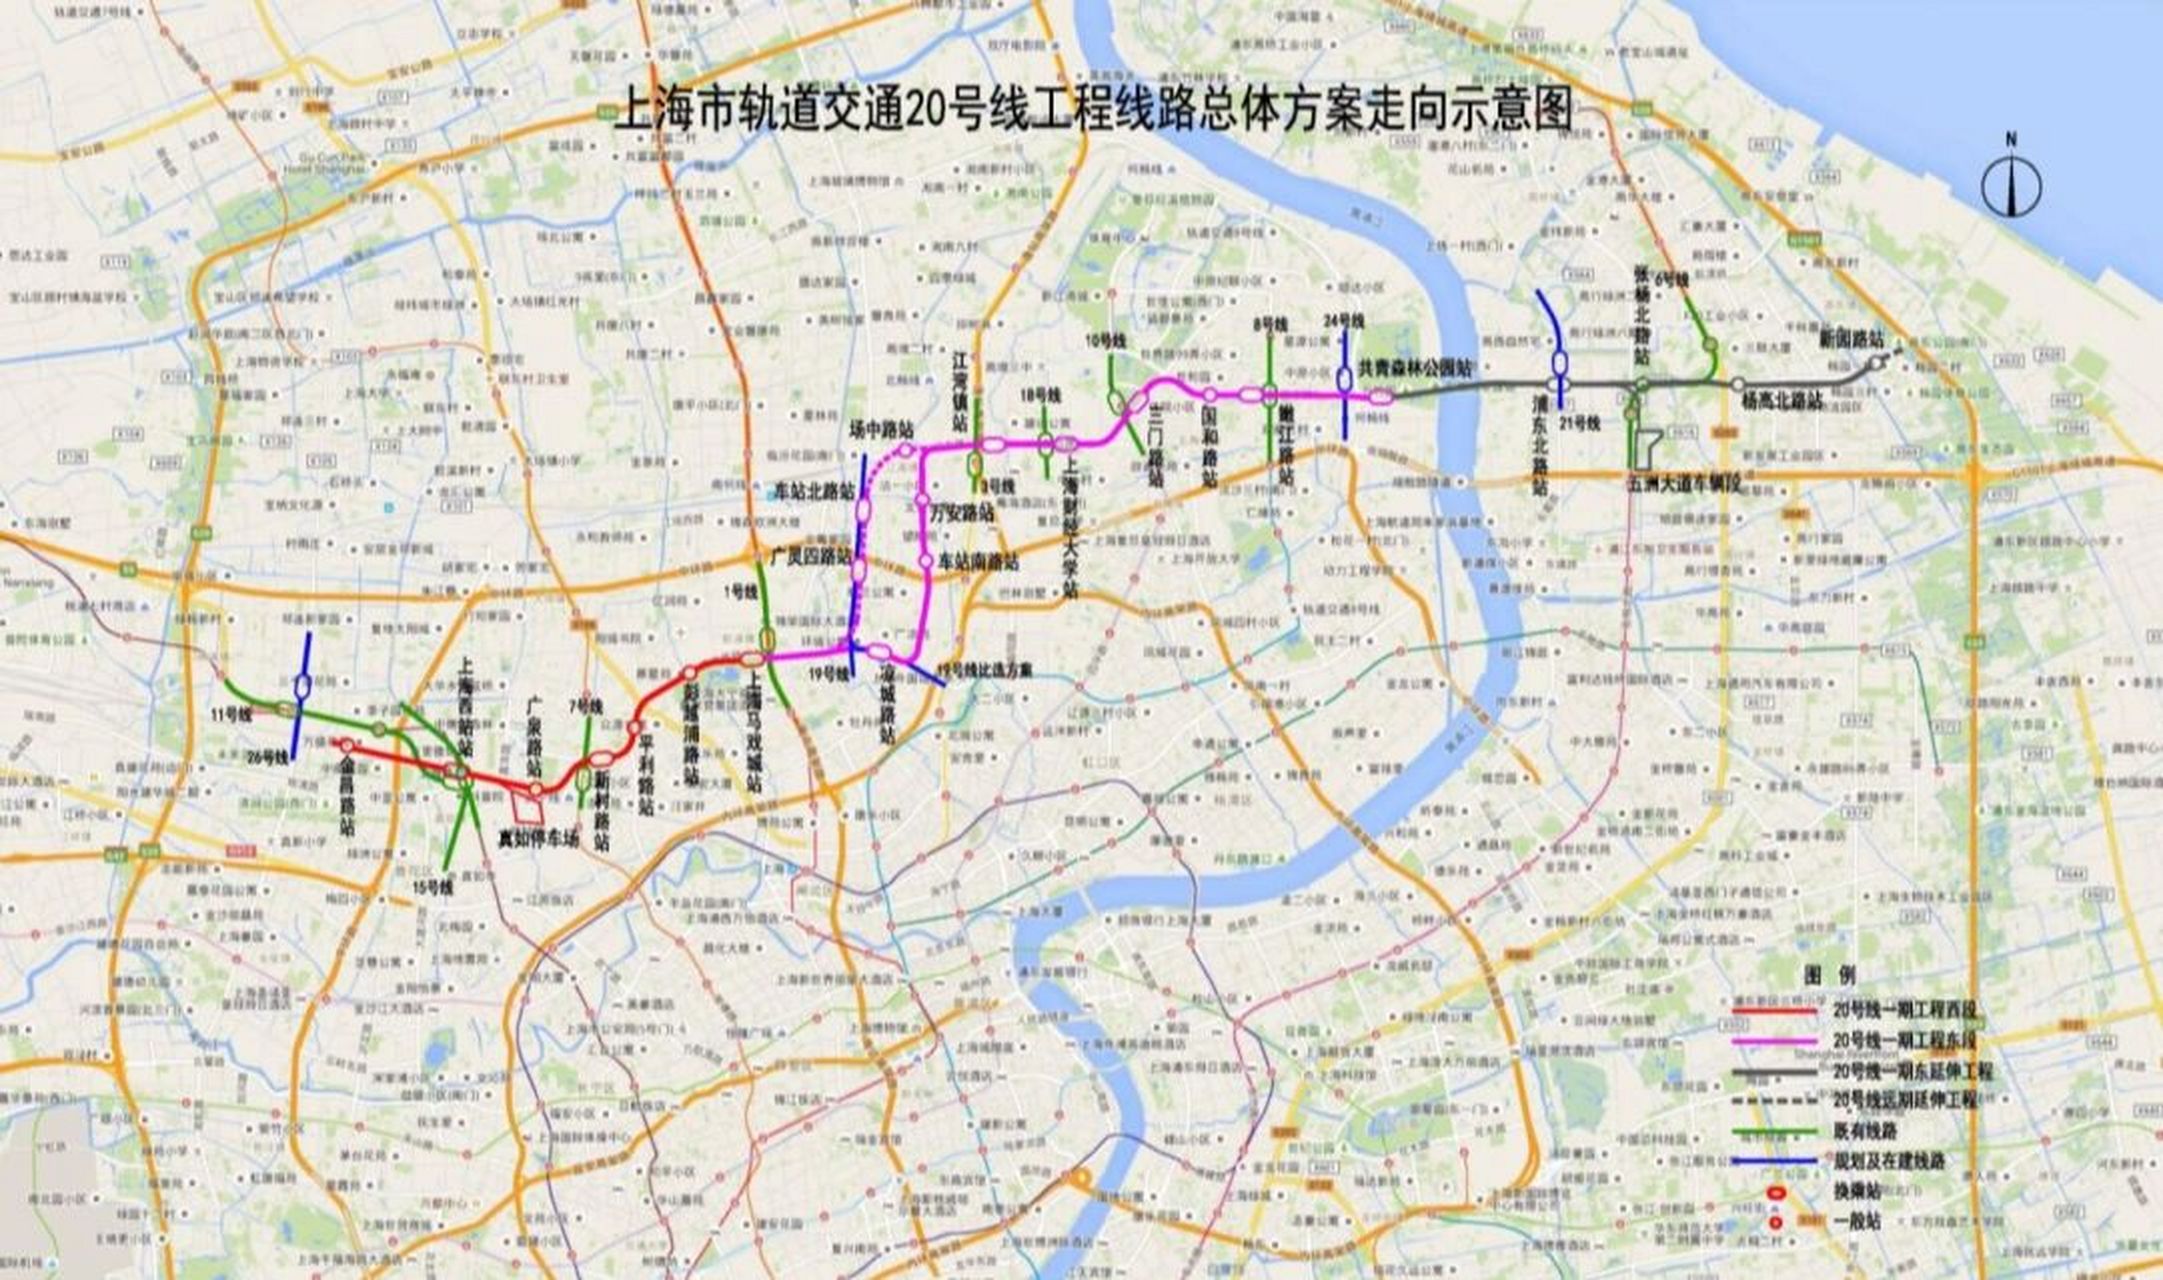 上海轨交20号线一期线路官方示意图 一期西段环评里面